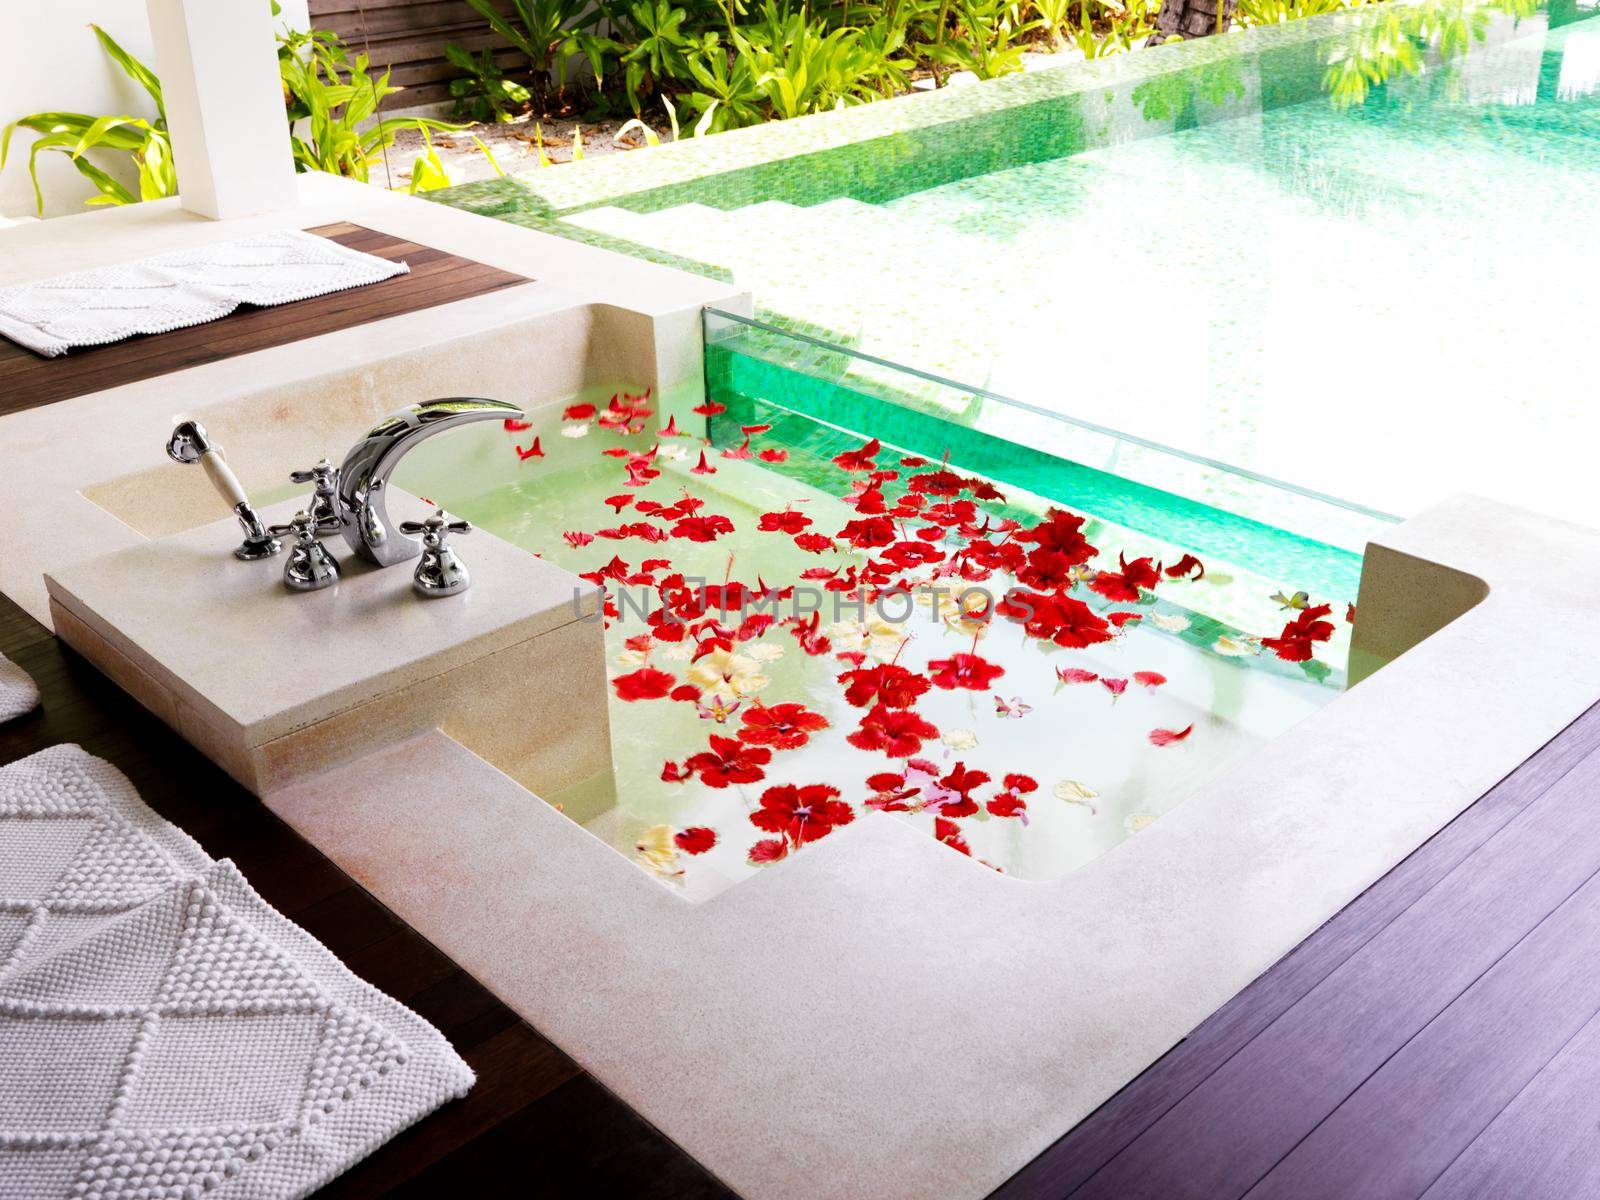 Modern bathroom with bath tub full of flower petals at a spa resort.